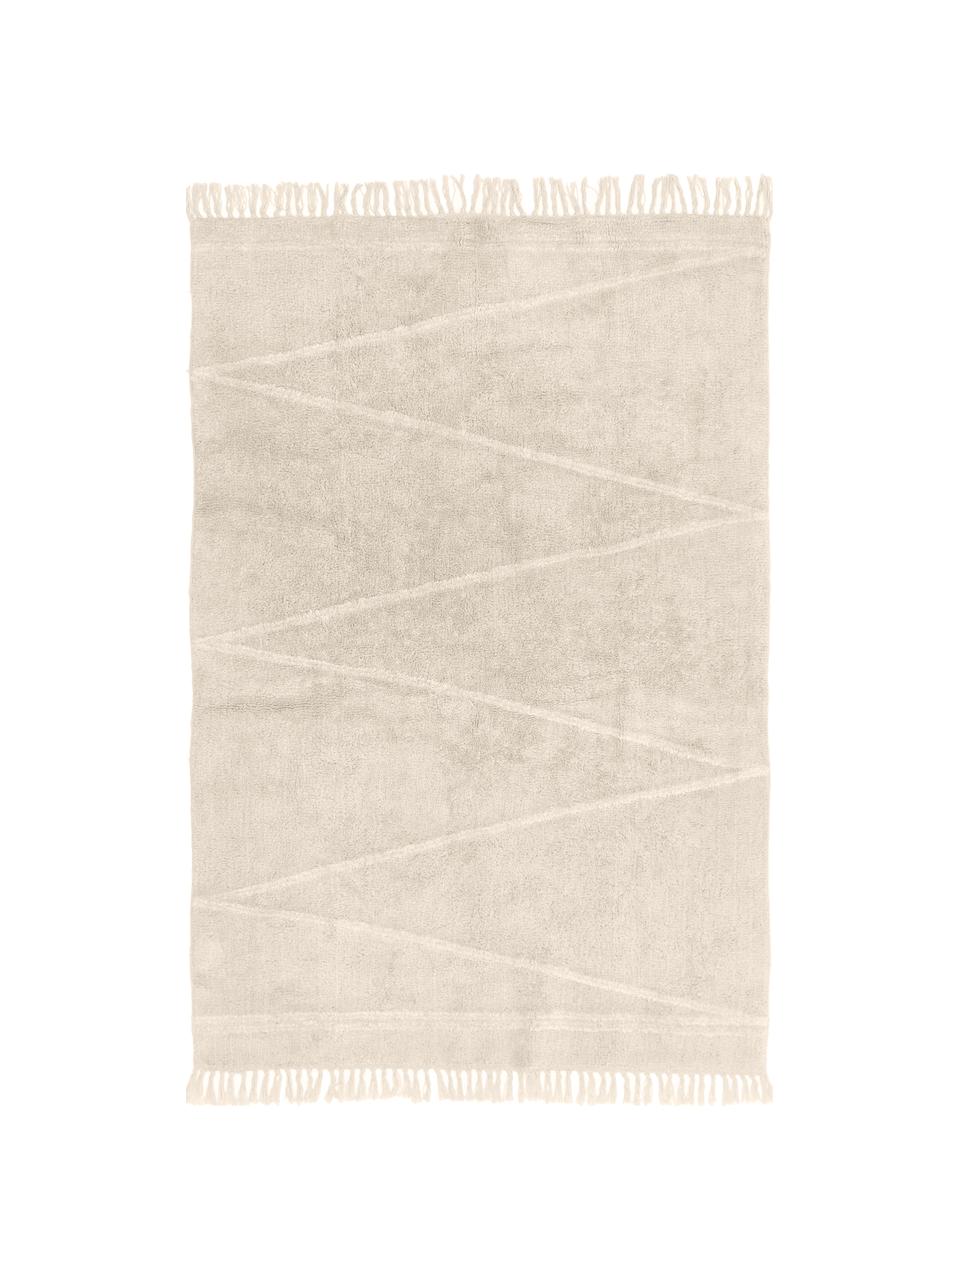 Handgetufteter Baumwollteppich Asisa mit Zickzack-Muster und Fransen, Beige & Cremeweiß, B 120 x L 180 cm (Größe S)